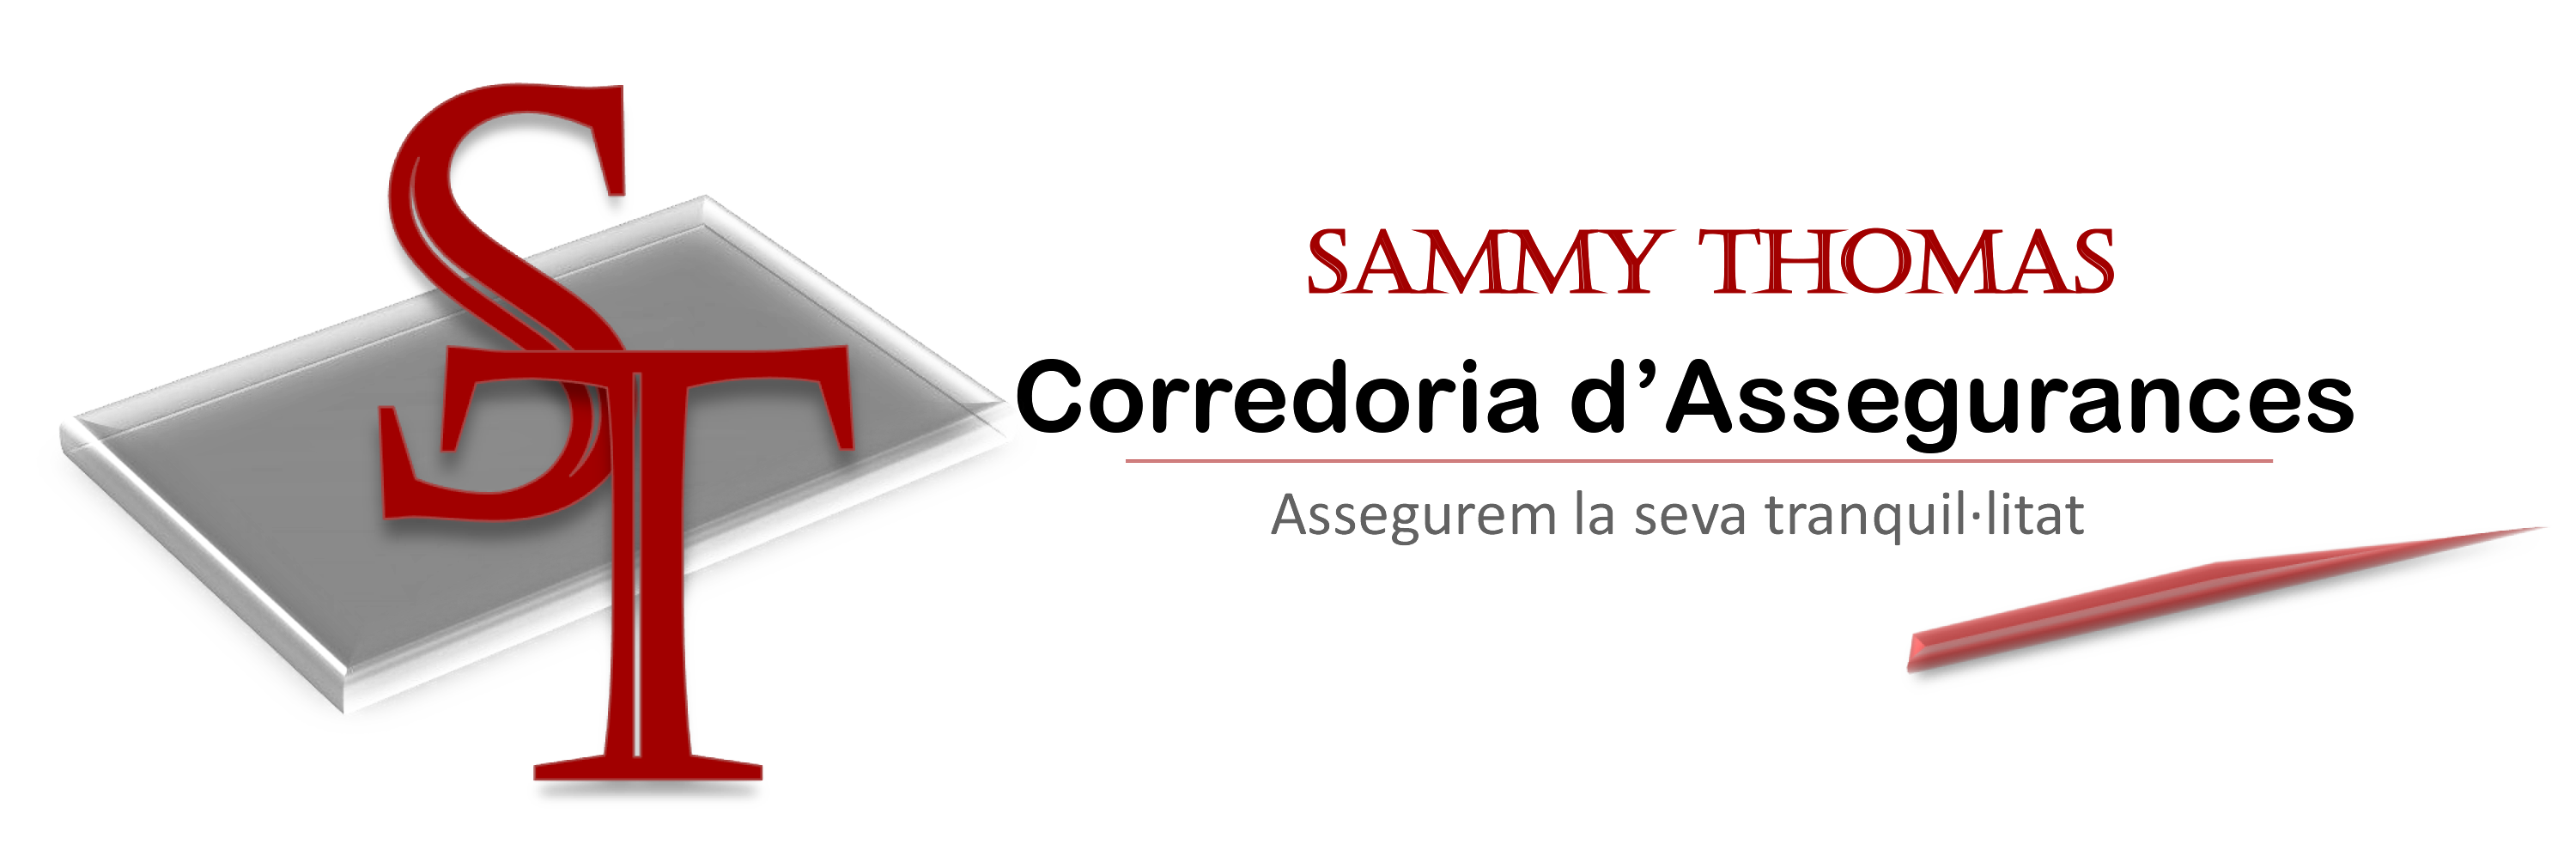 Sammy Thomas